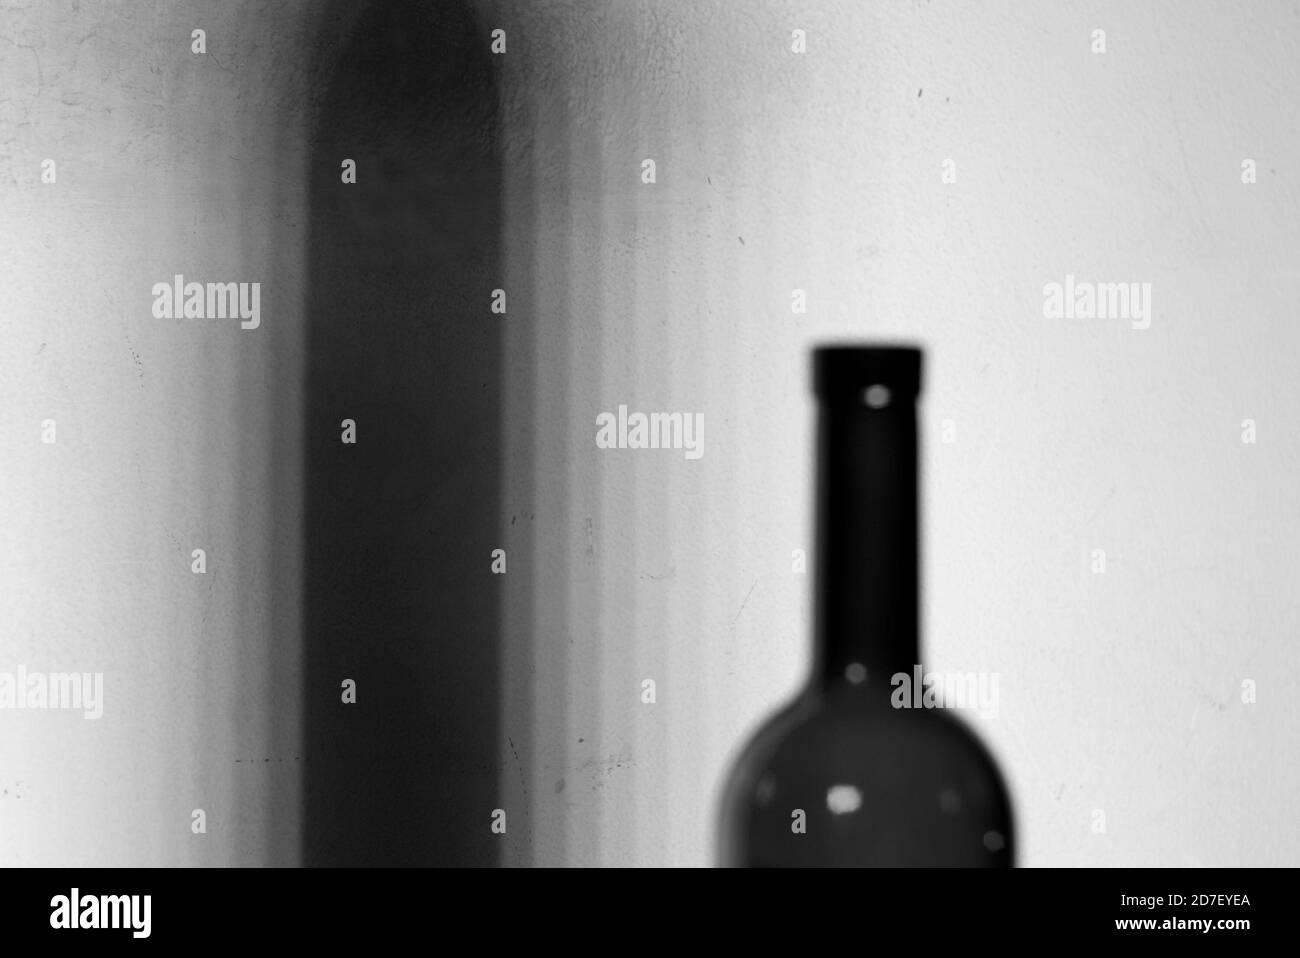 A lens blur image of an empty wine bottle. Wine bottle in blur. Stock Photo